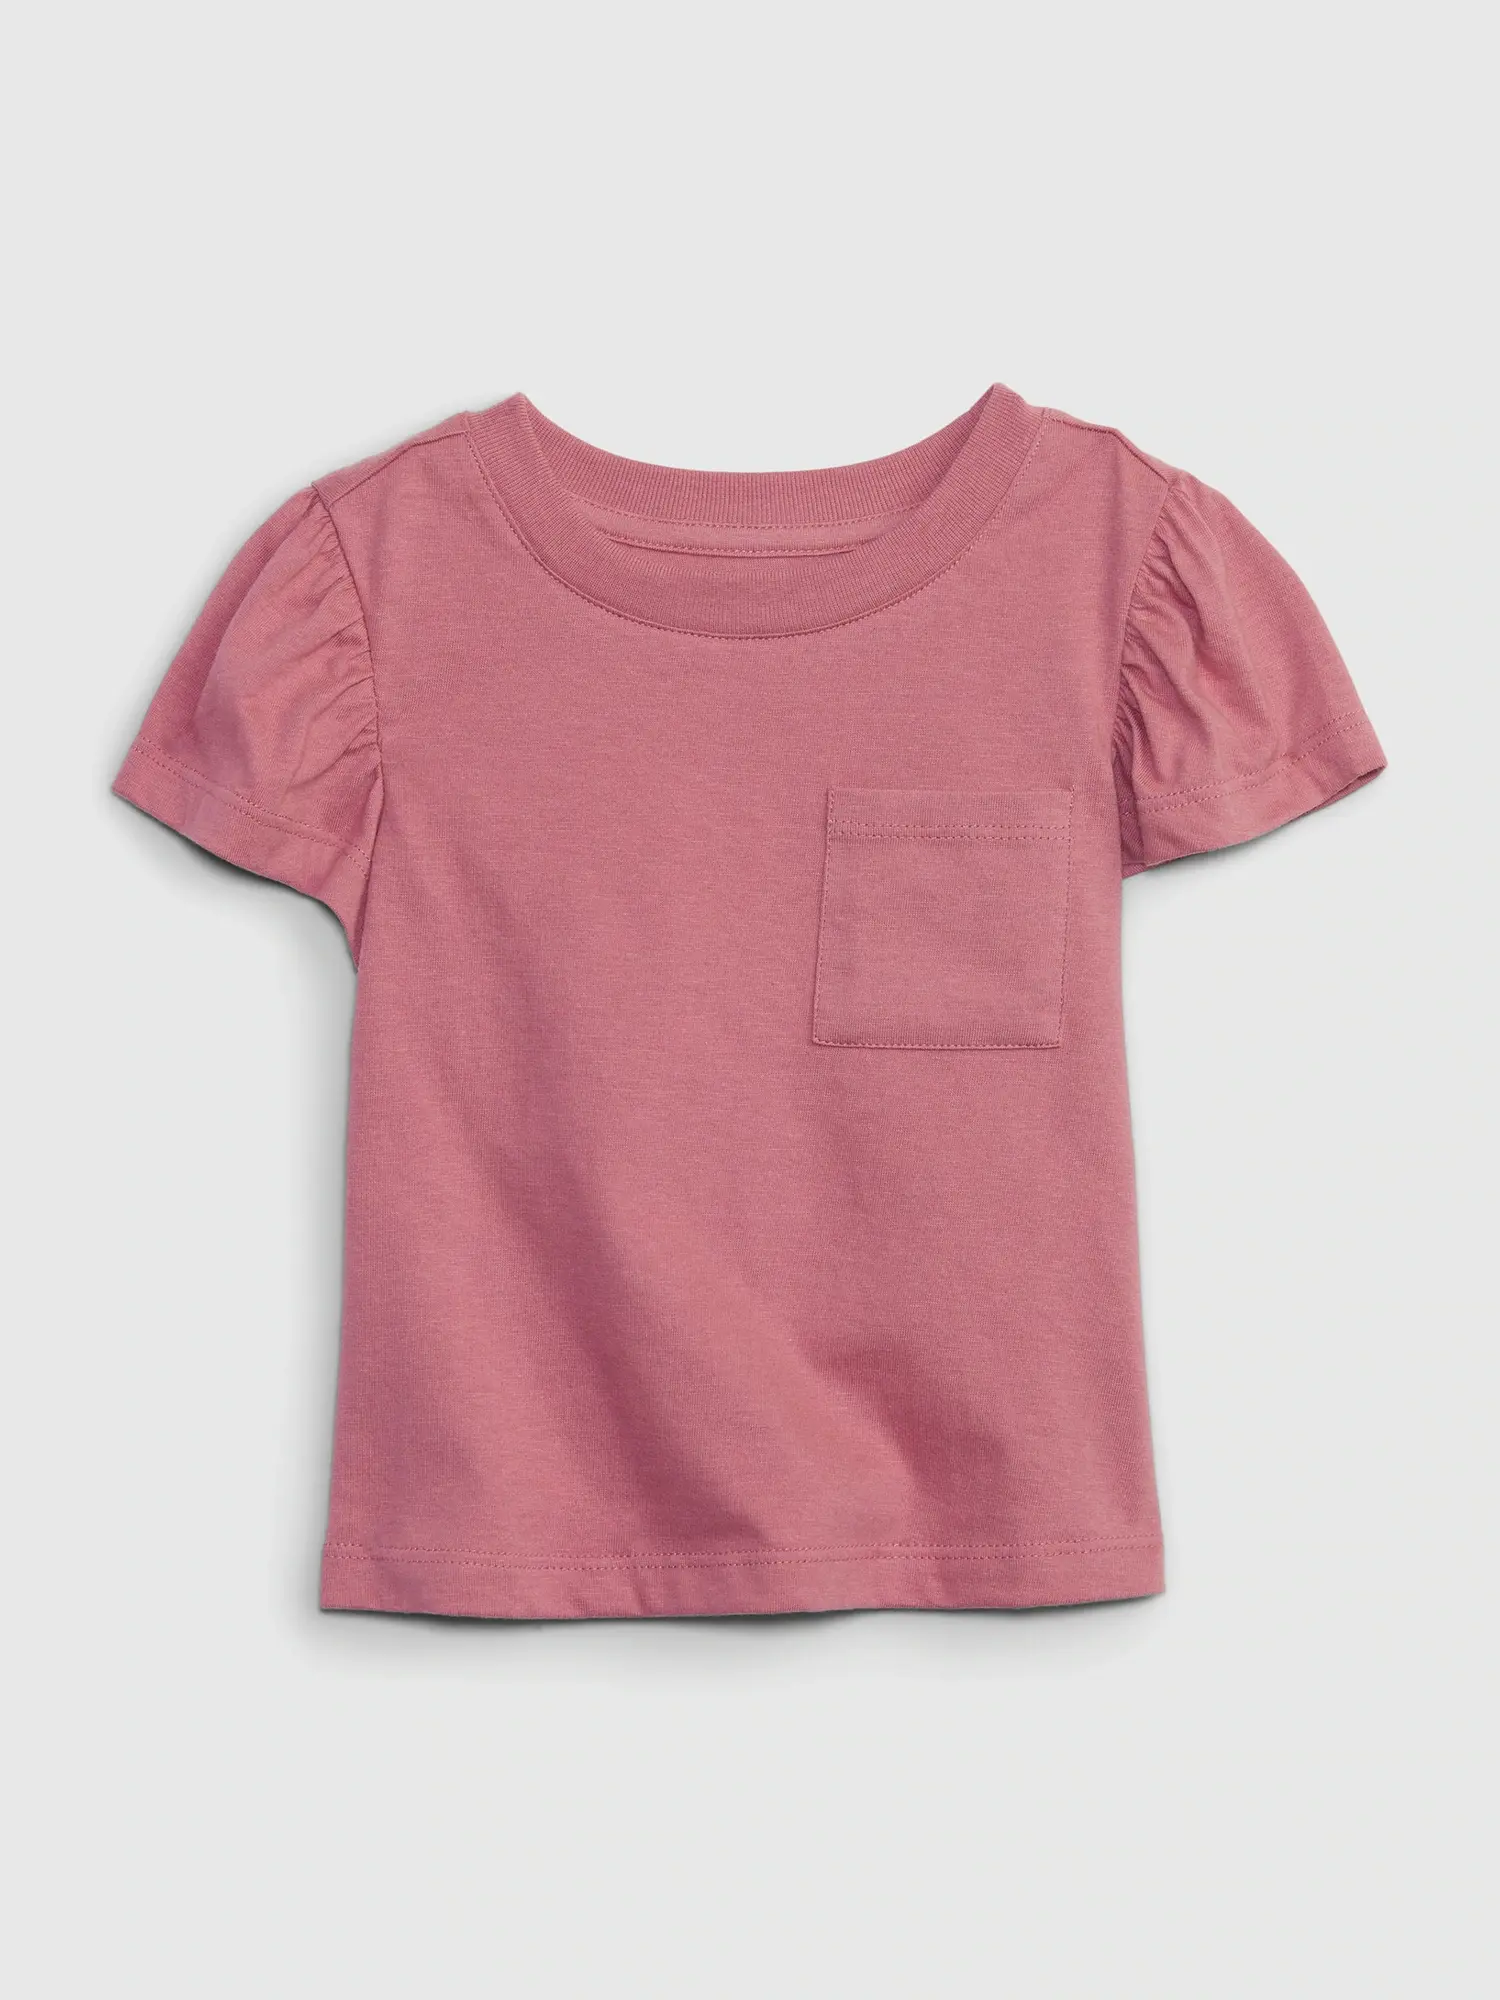 Gap Toddler Organic Cotton Mix and Match T-Shirt pink. 1